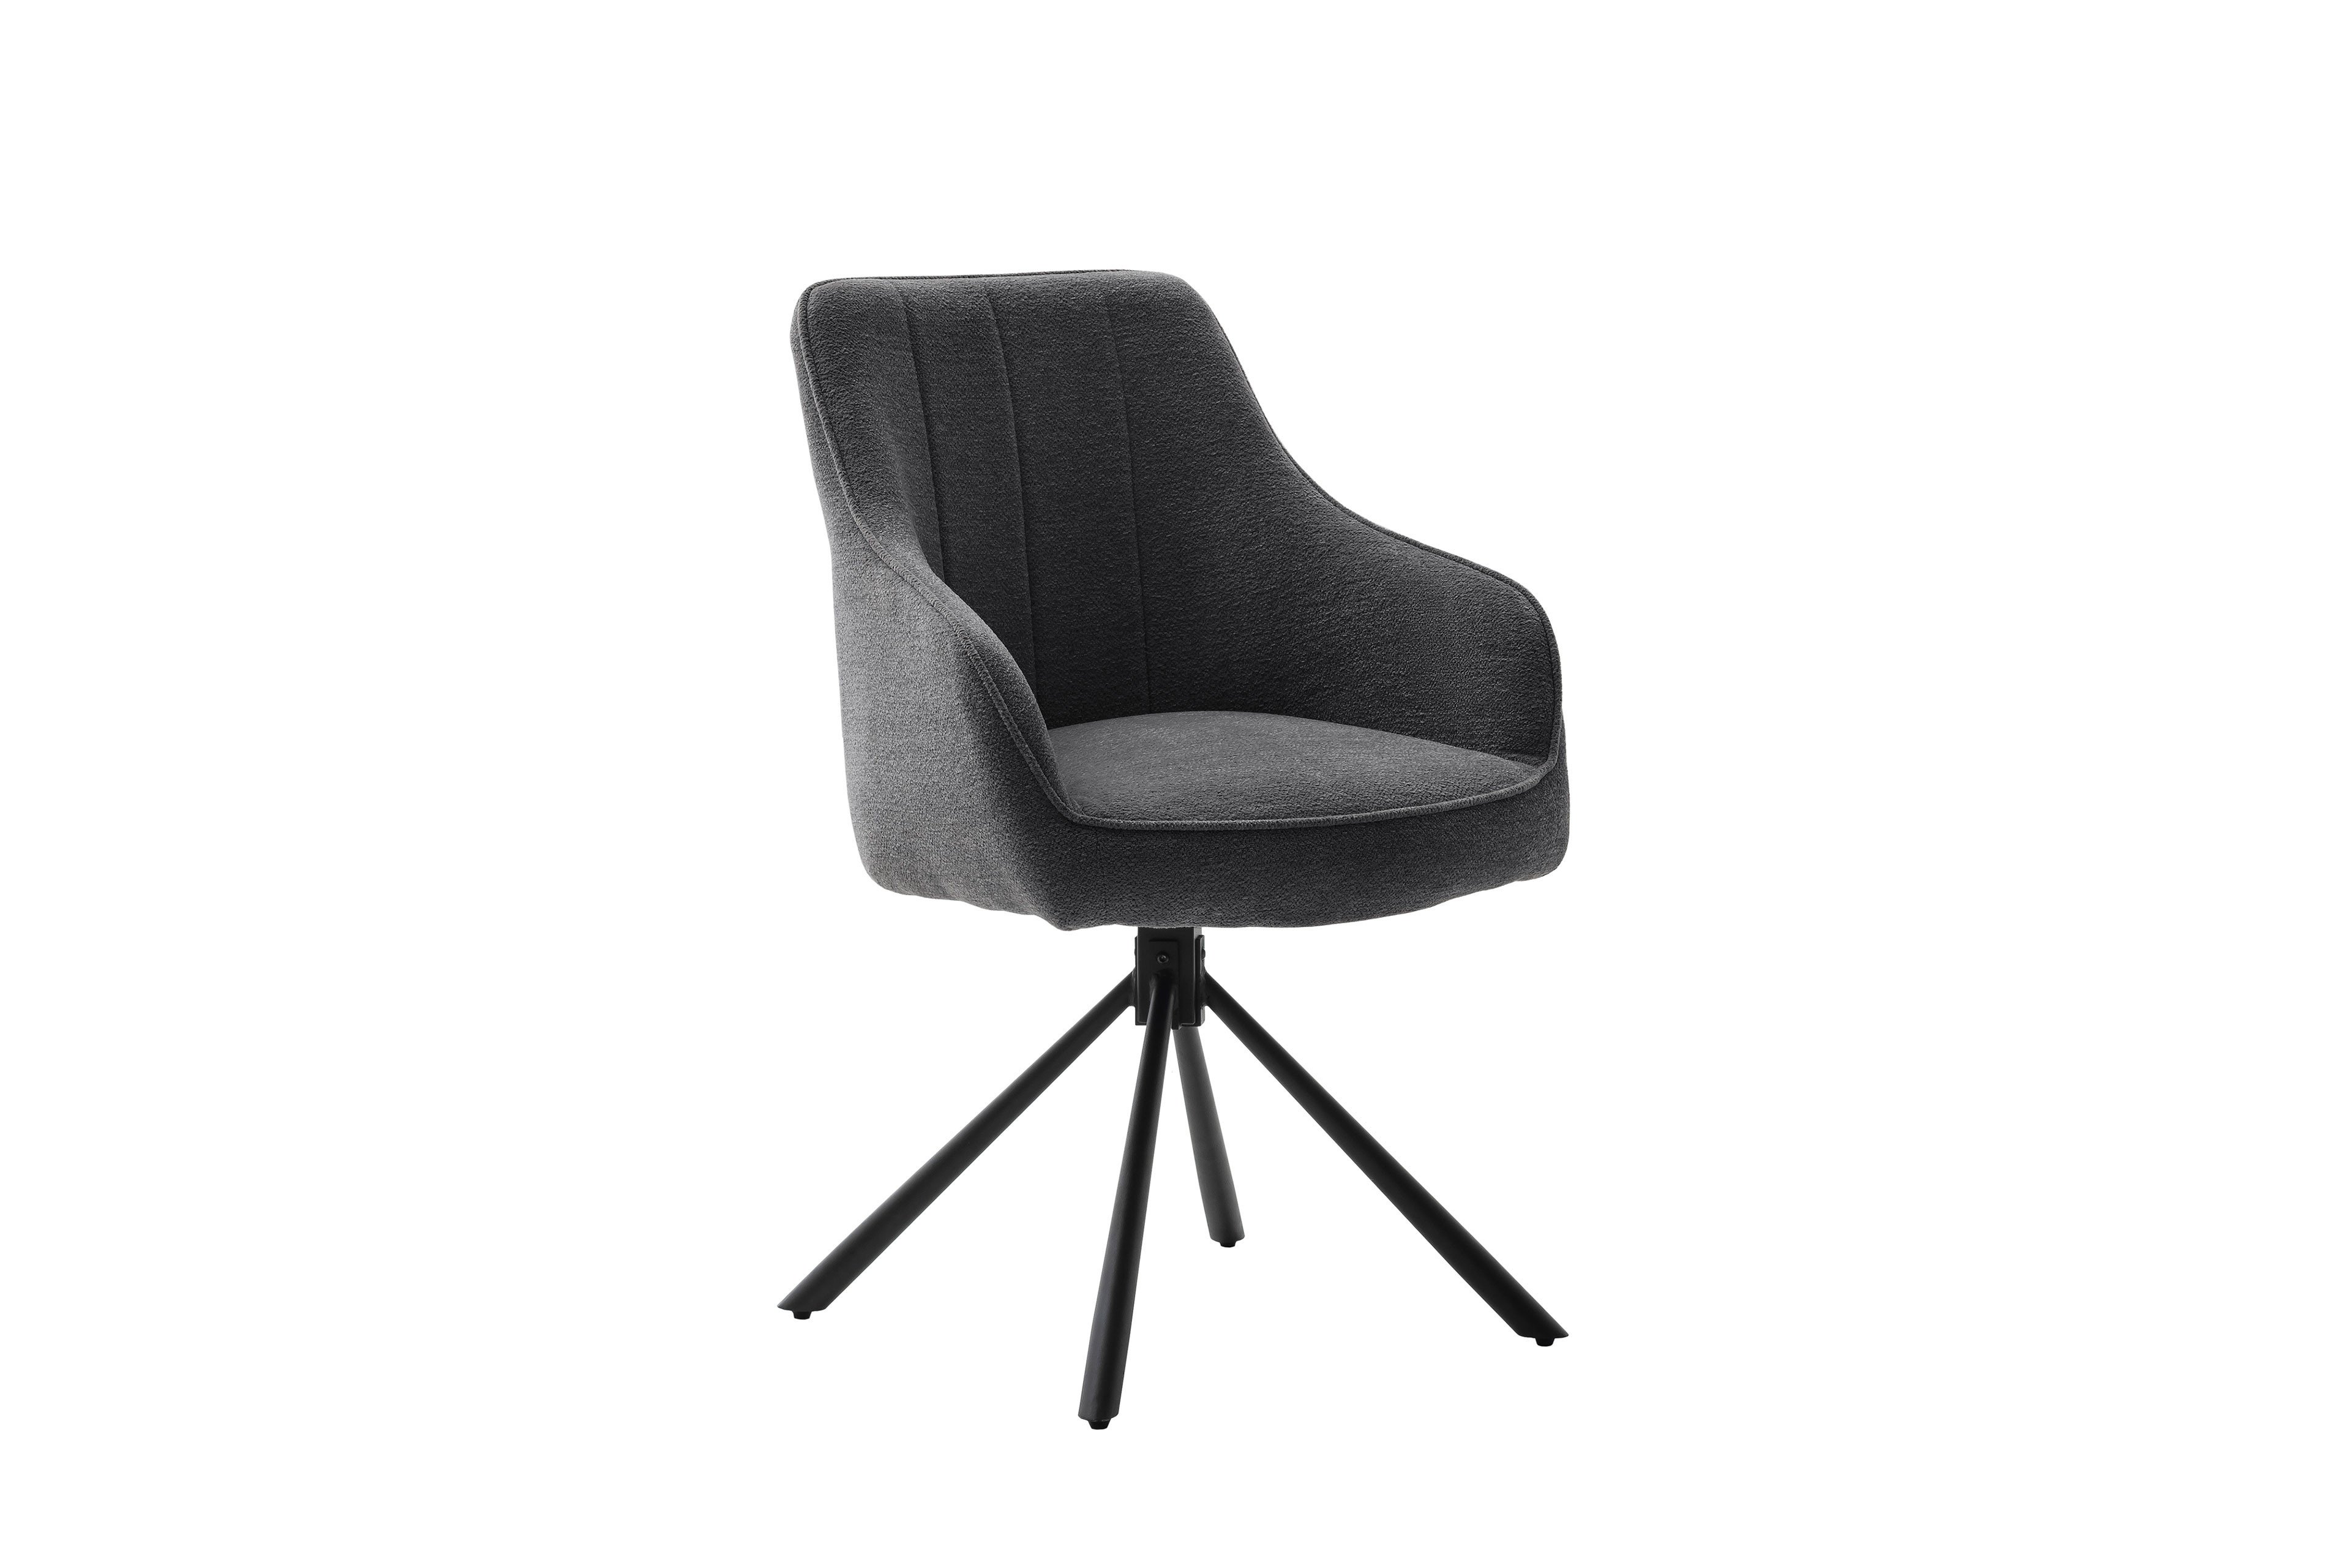 MCA furniture Stuhl Kasama anthrazit | Möbel Letz - Ihr Online-Shop